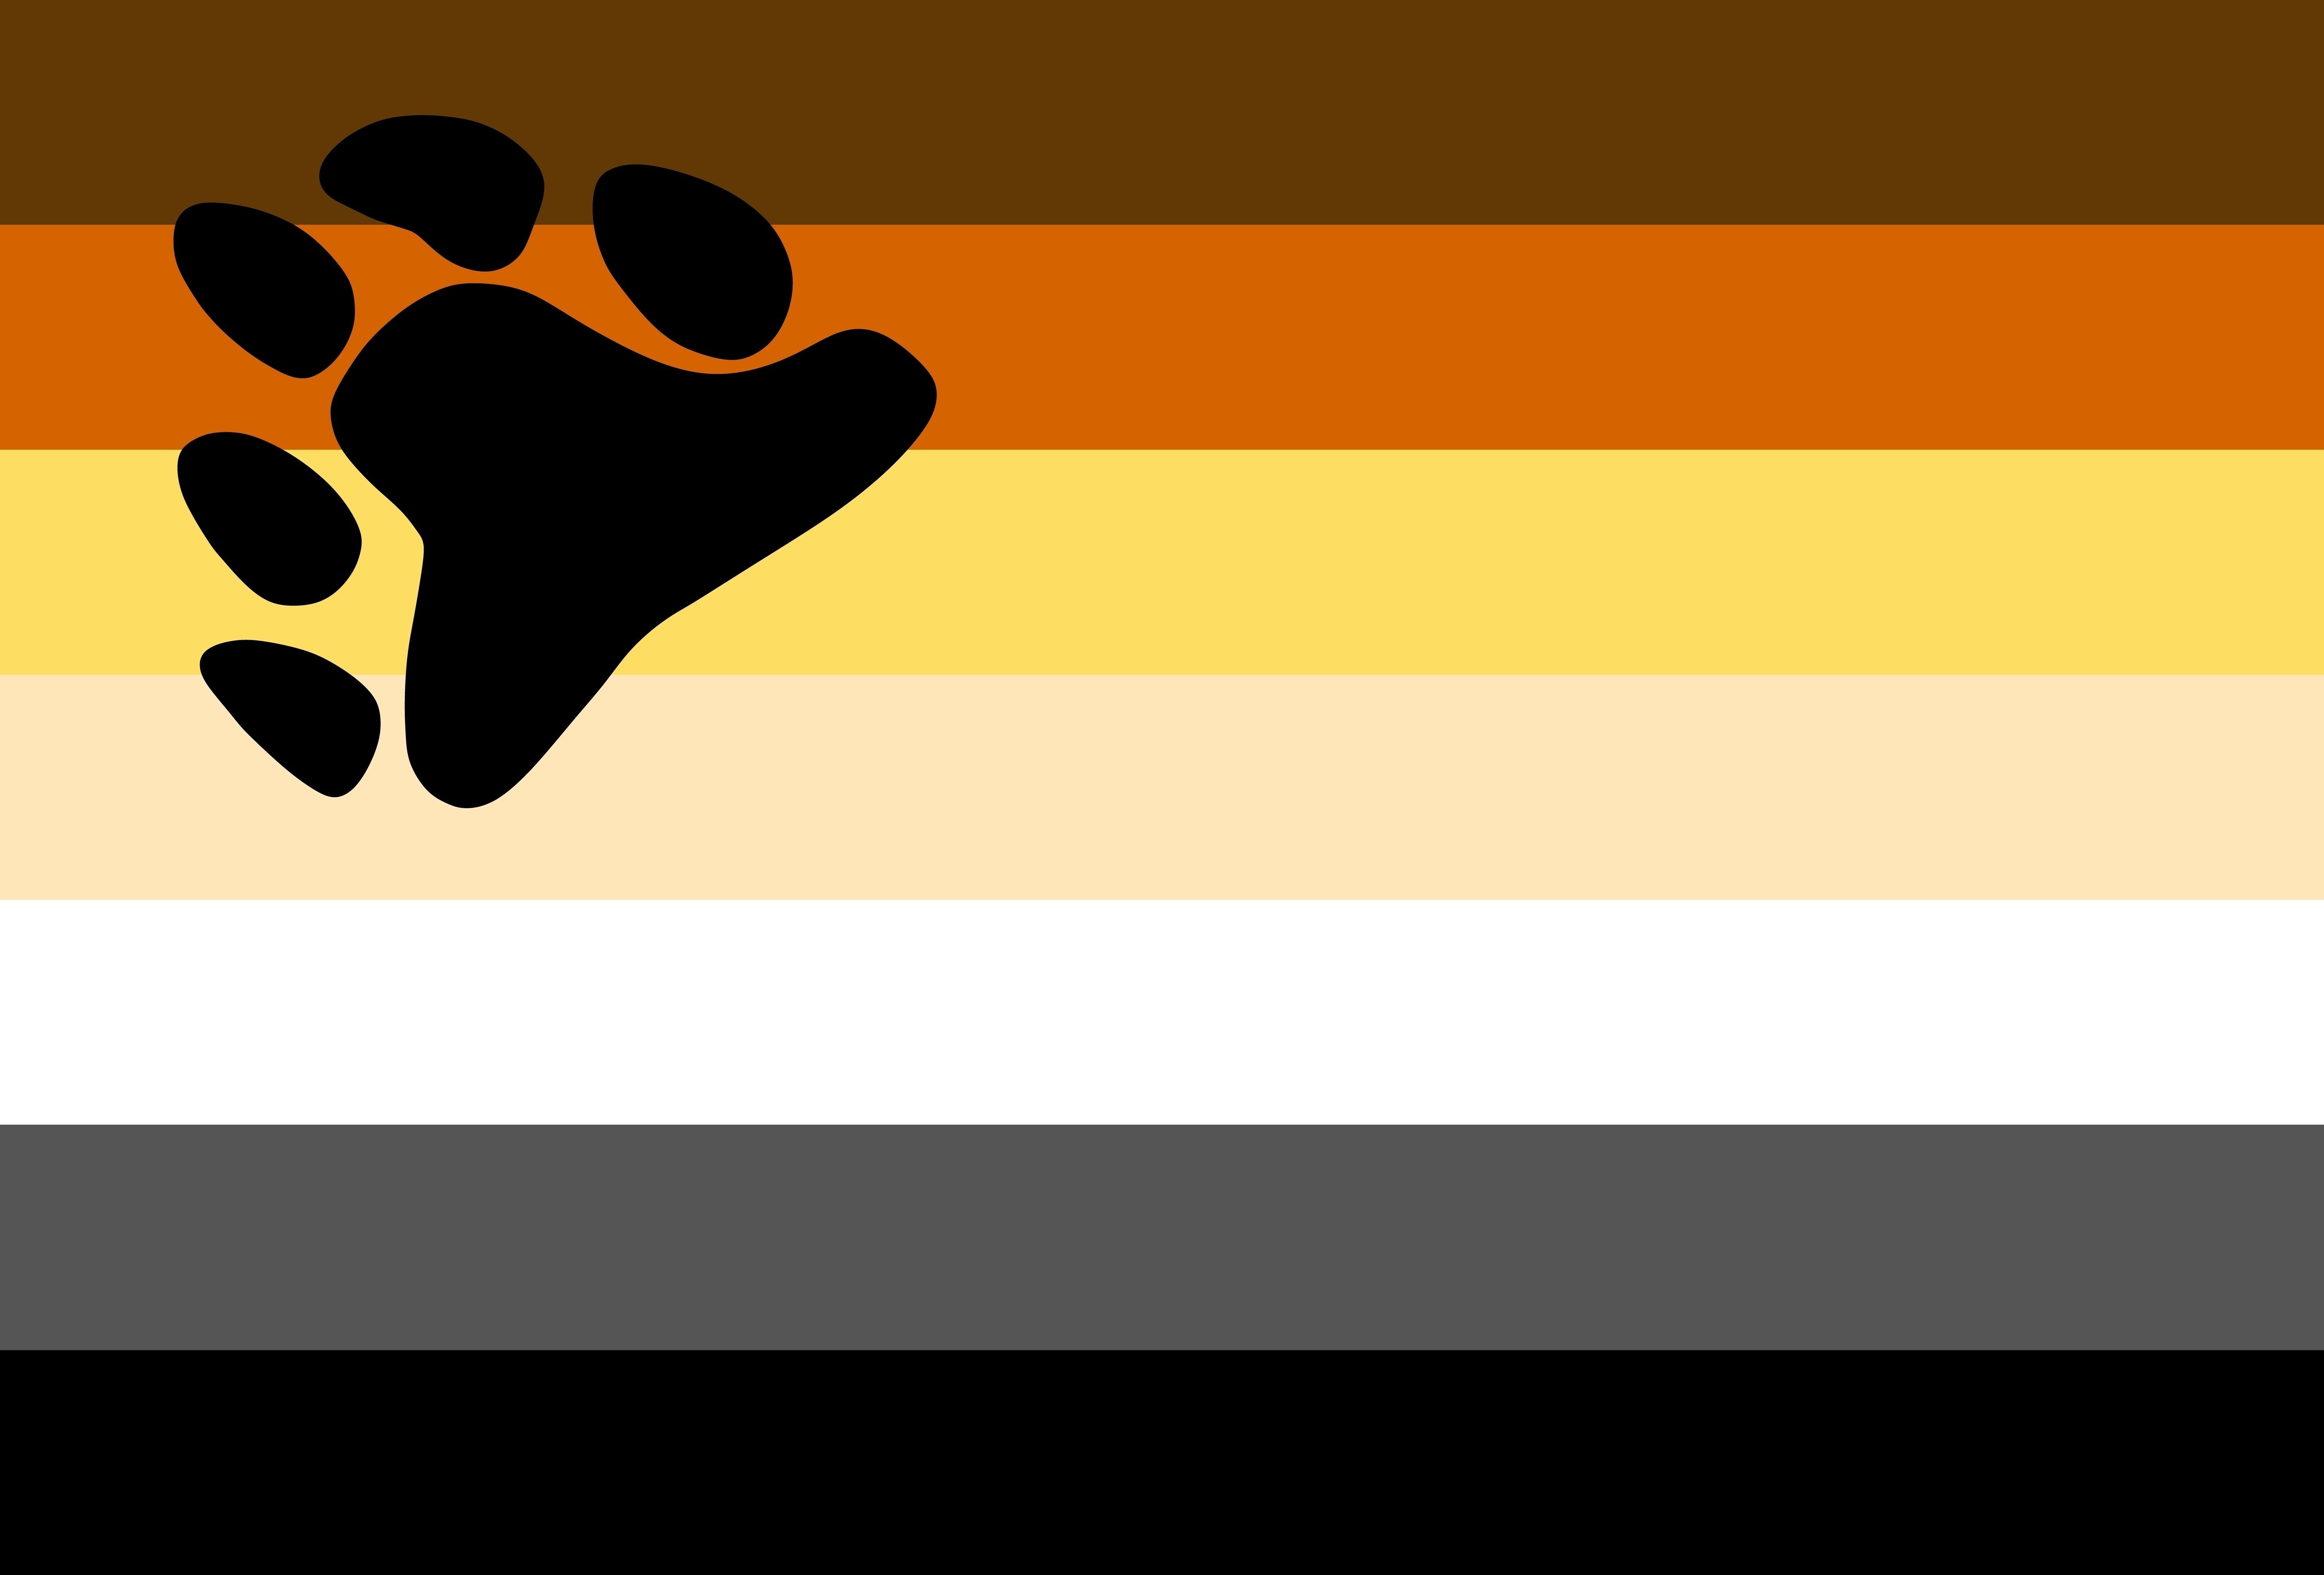 Bandeira urso em tons de marrom, amarelo, branco, cinza e preto, com a pegada de um urso.